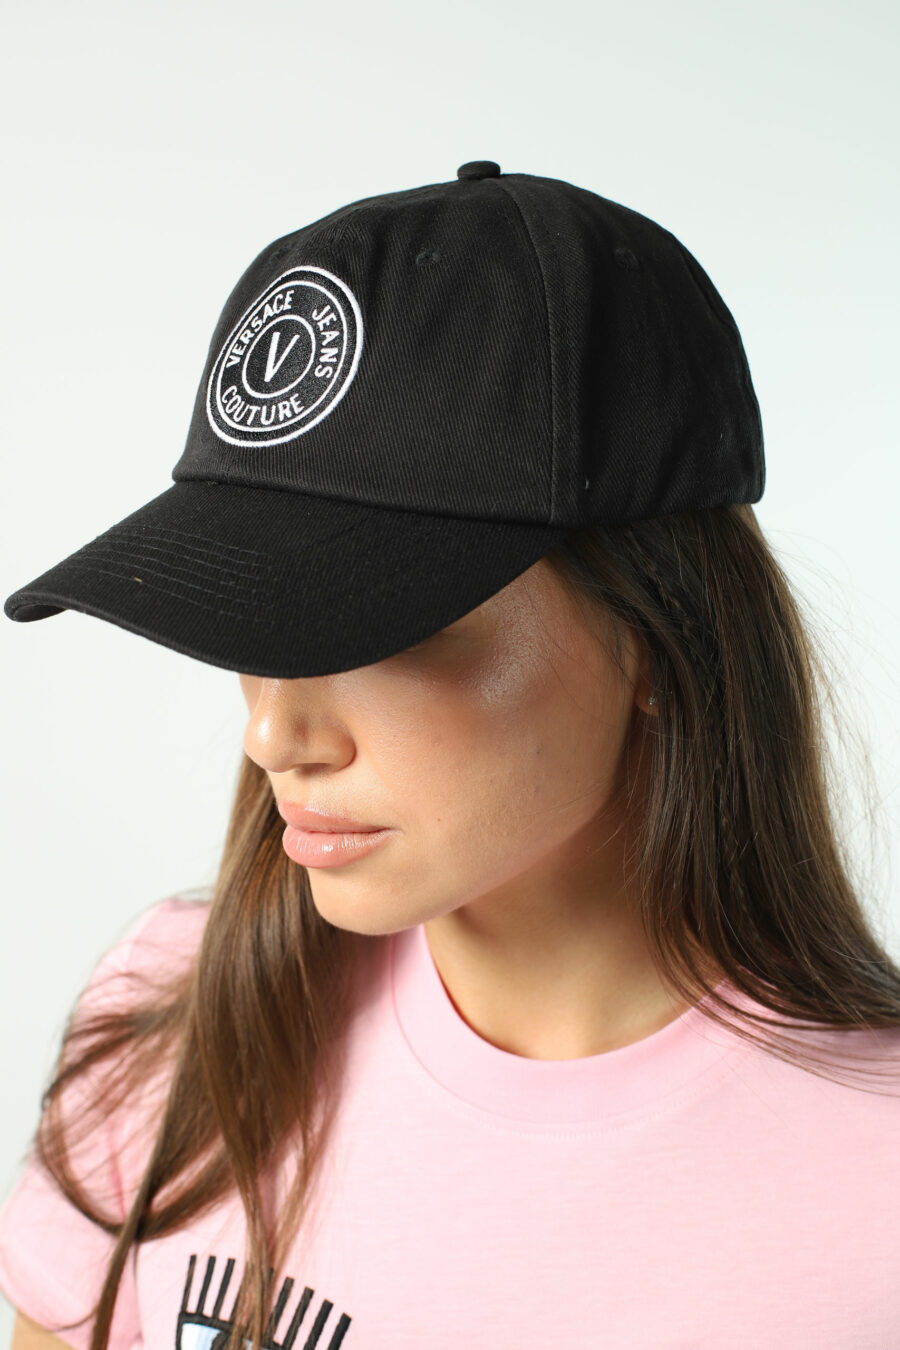 Schwarze Kappe mit weißem kreisförmigen Logo - Fotos 2716